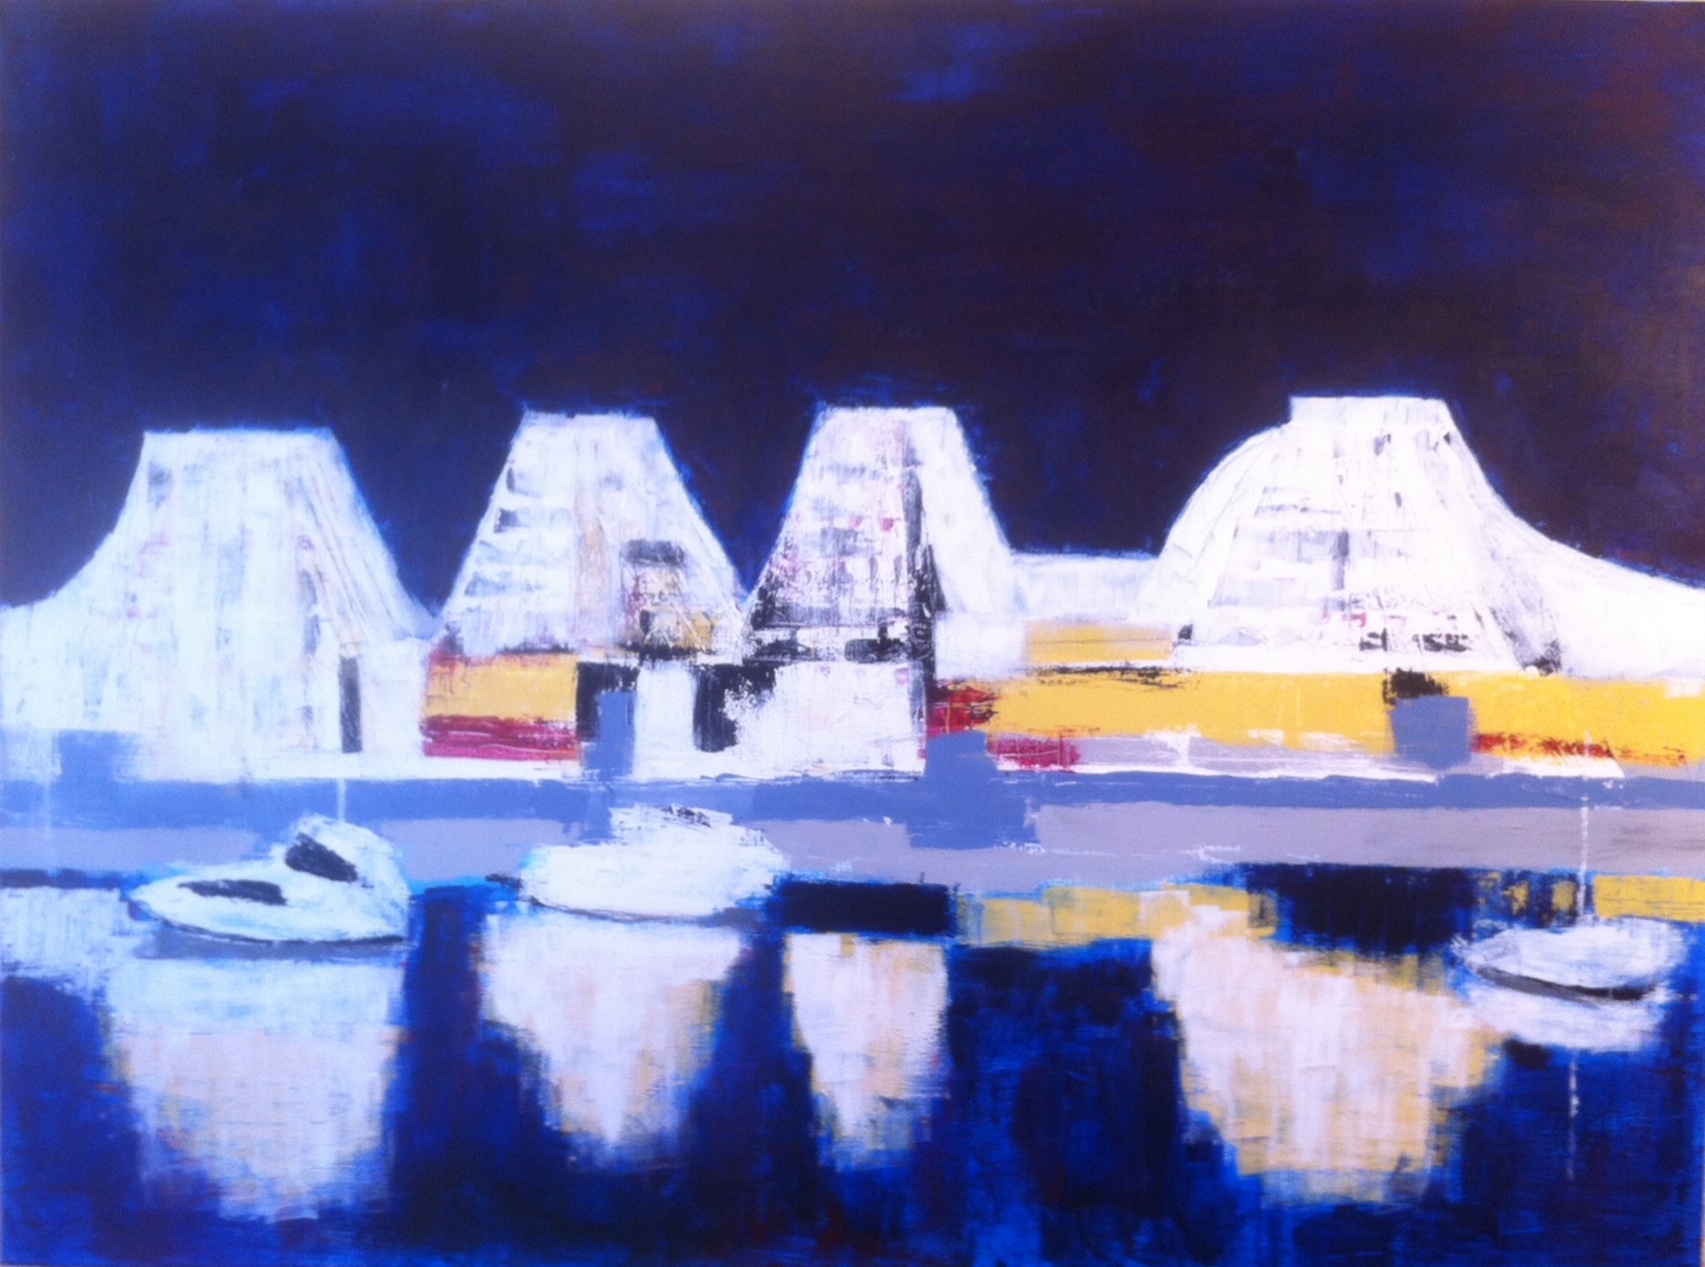 N° 1663 - Port de la Grande Motte - Acrylique sur toile - 97 x 130 cm - 10 novembre 2014